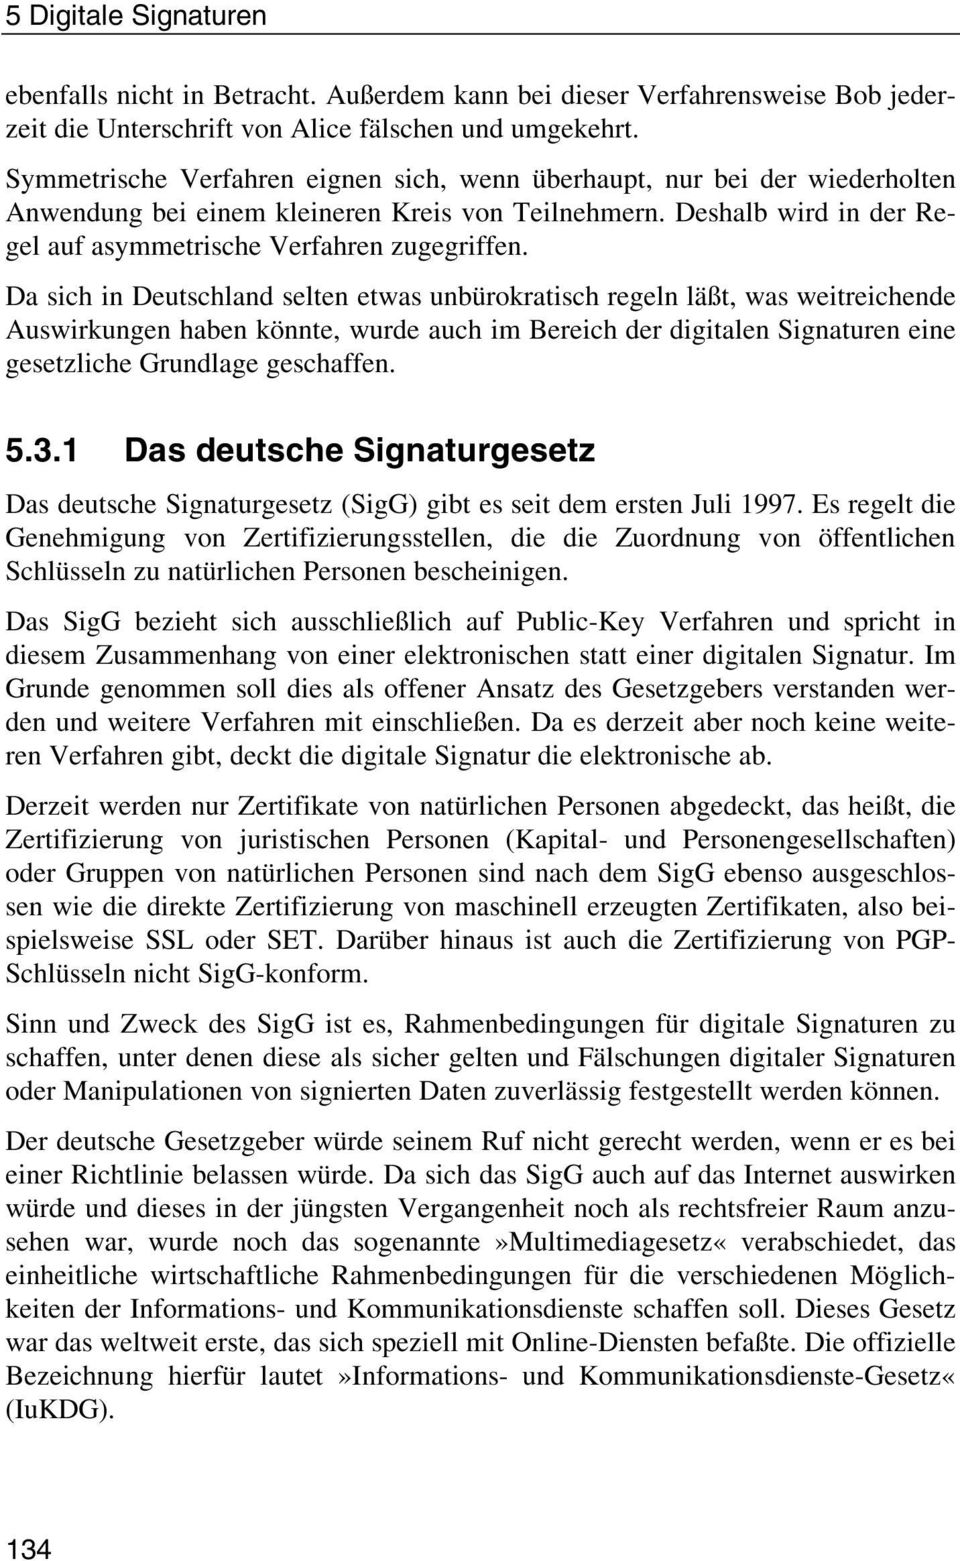 Da sich in Deutschland selten etwas unbürokratisch regeln läßt, was weitreichende Auswirkungen haben könnte, wurde auch im Bereich der digitalen Signaturen eine gesetzliche Grundlage geschaffen. 5.3.